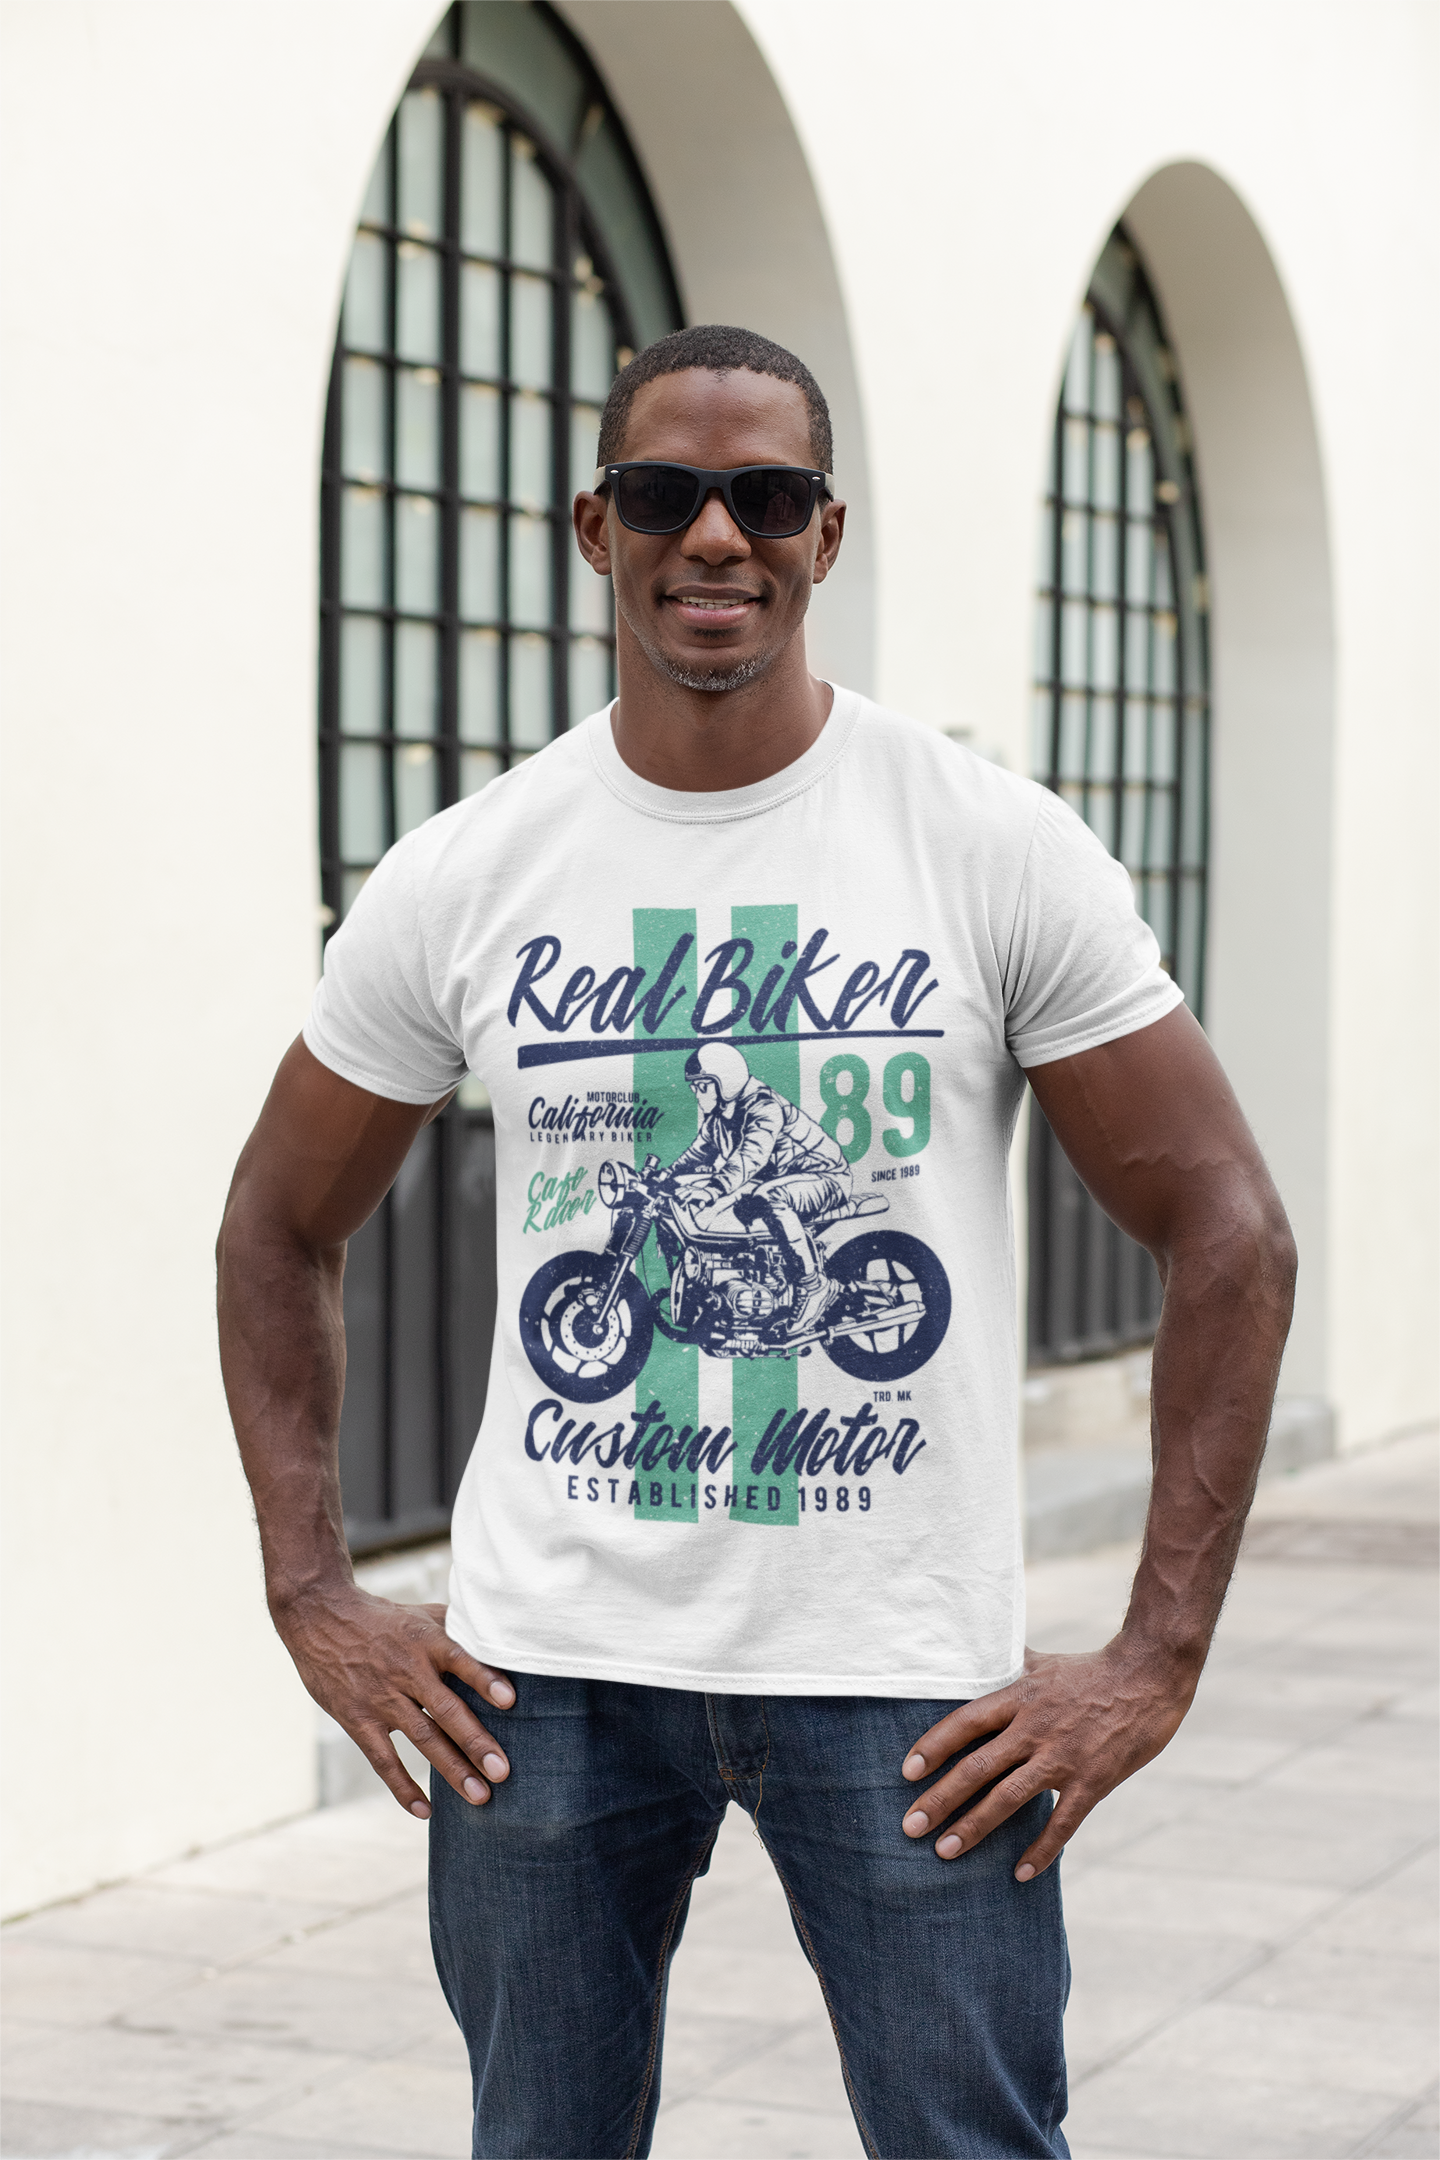 ULTRABASIC Real Biker 89 Men's T-Shirt - Custom Motor Established 1989